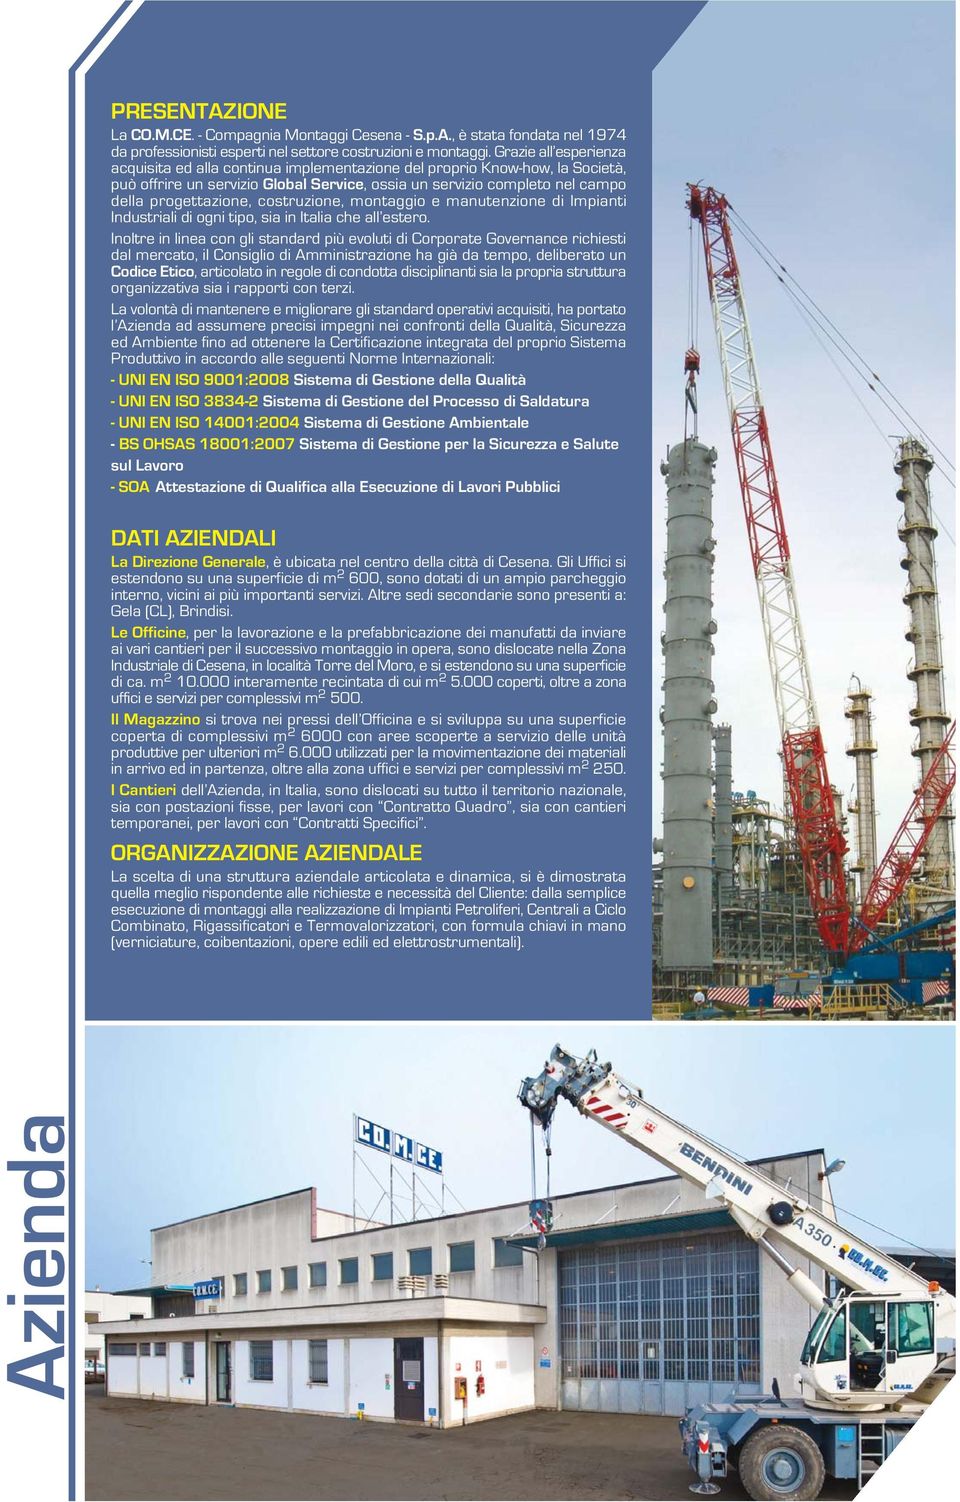 costruzione, montaggio e manutenzione di Impianti Industriali di ogni tipo, sia in Italia che all estero.